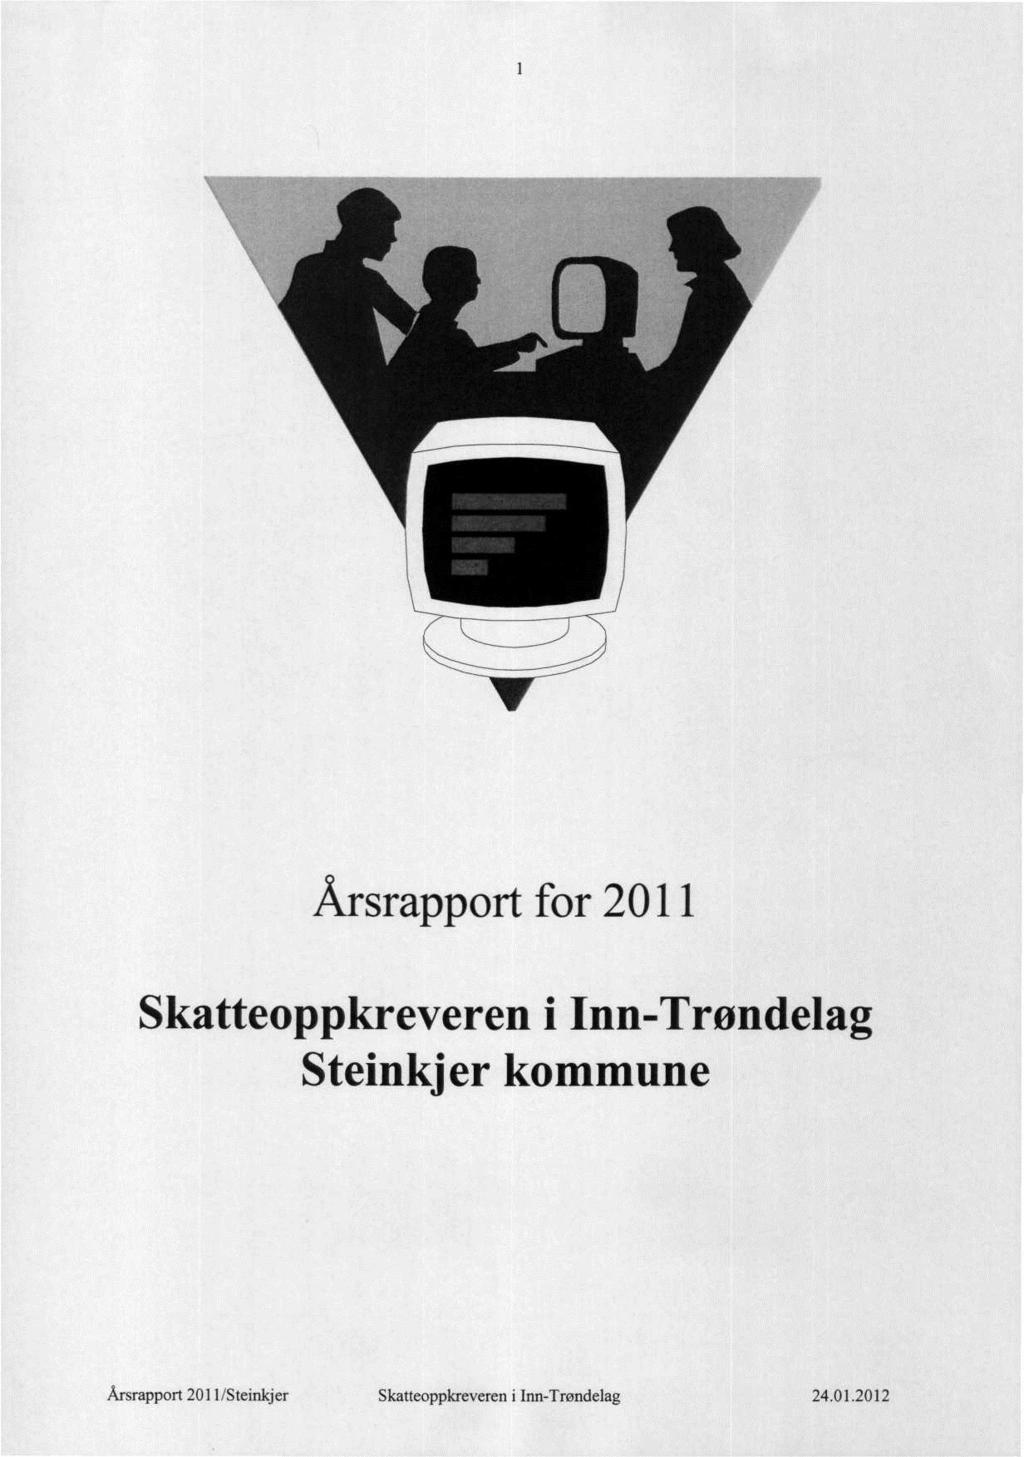 Årsrapport for 2011 Skatteoppkreveren i Inn-Trøndelag Steinkjer